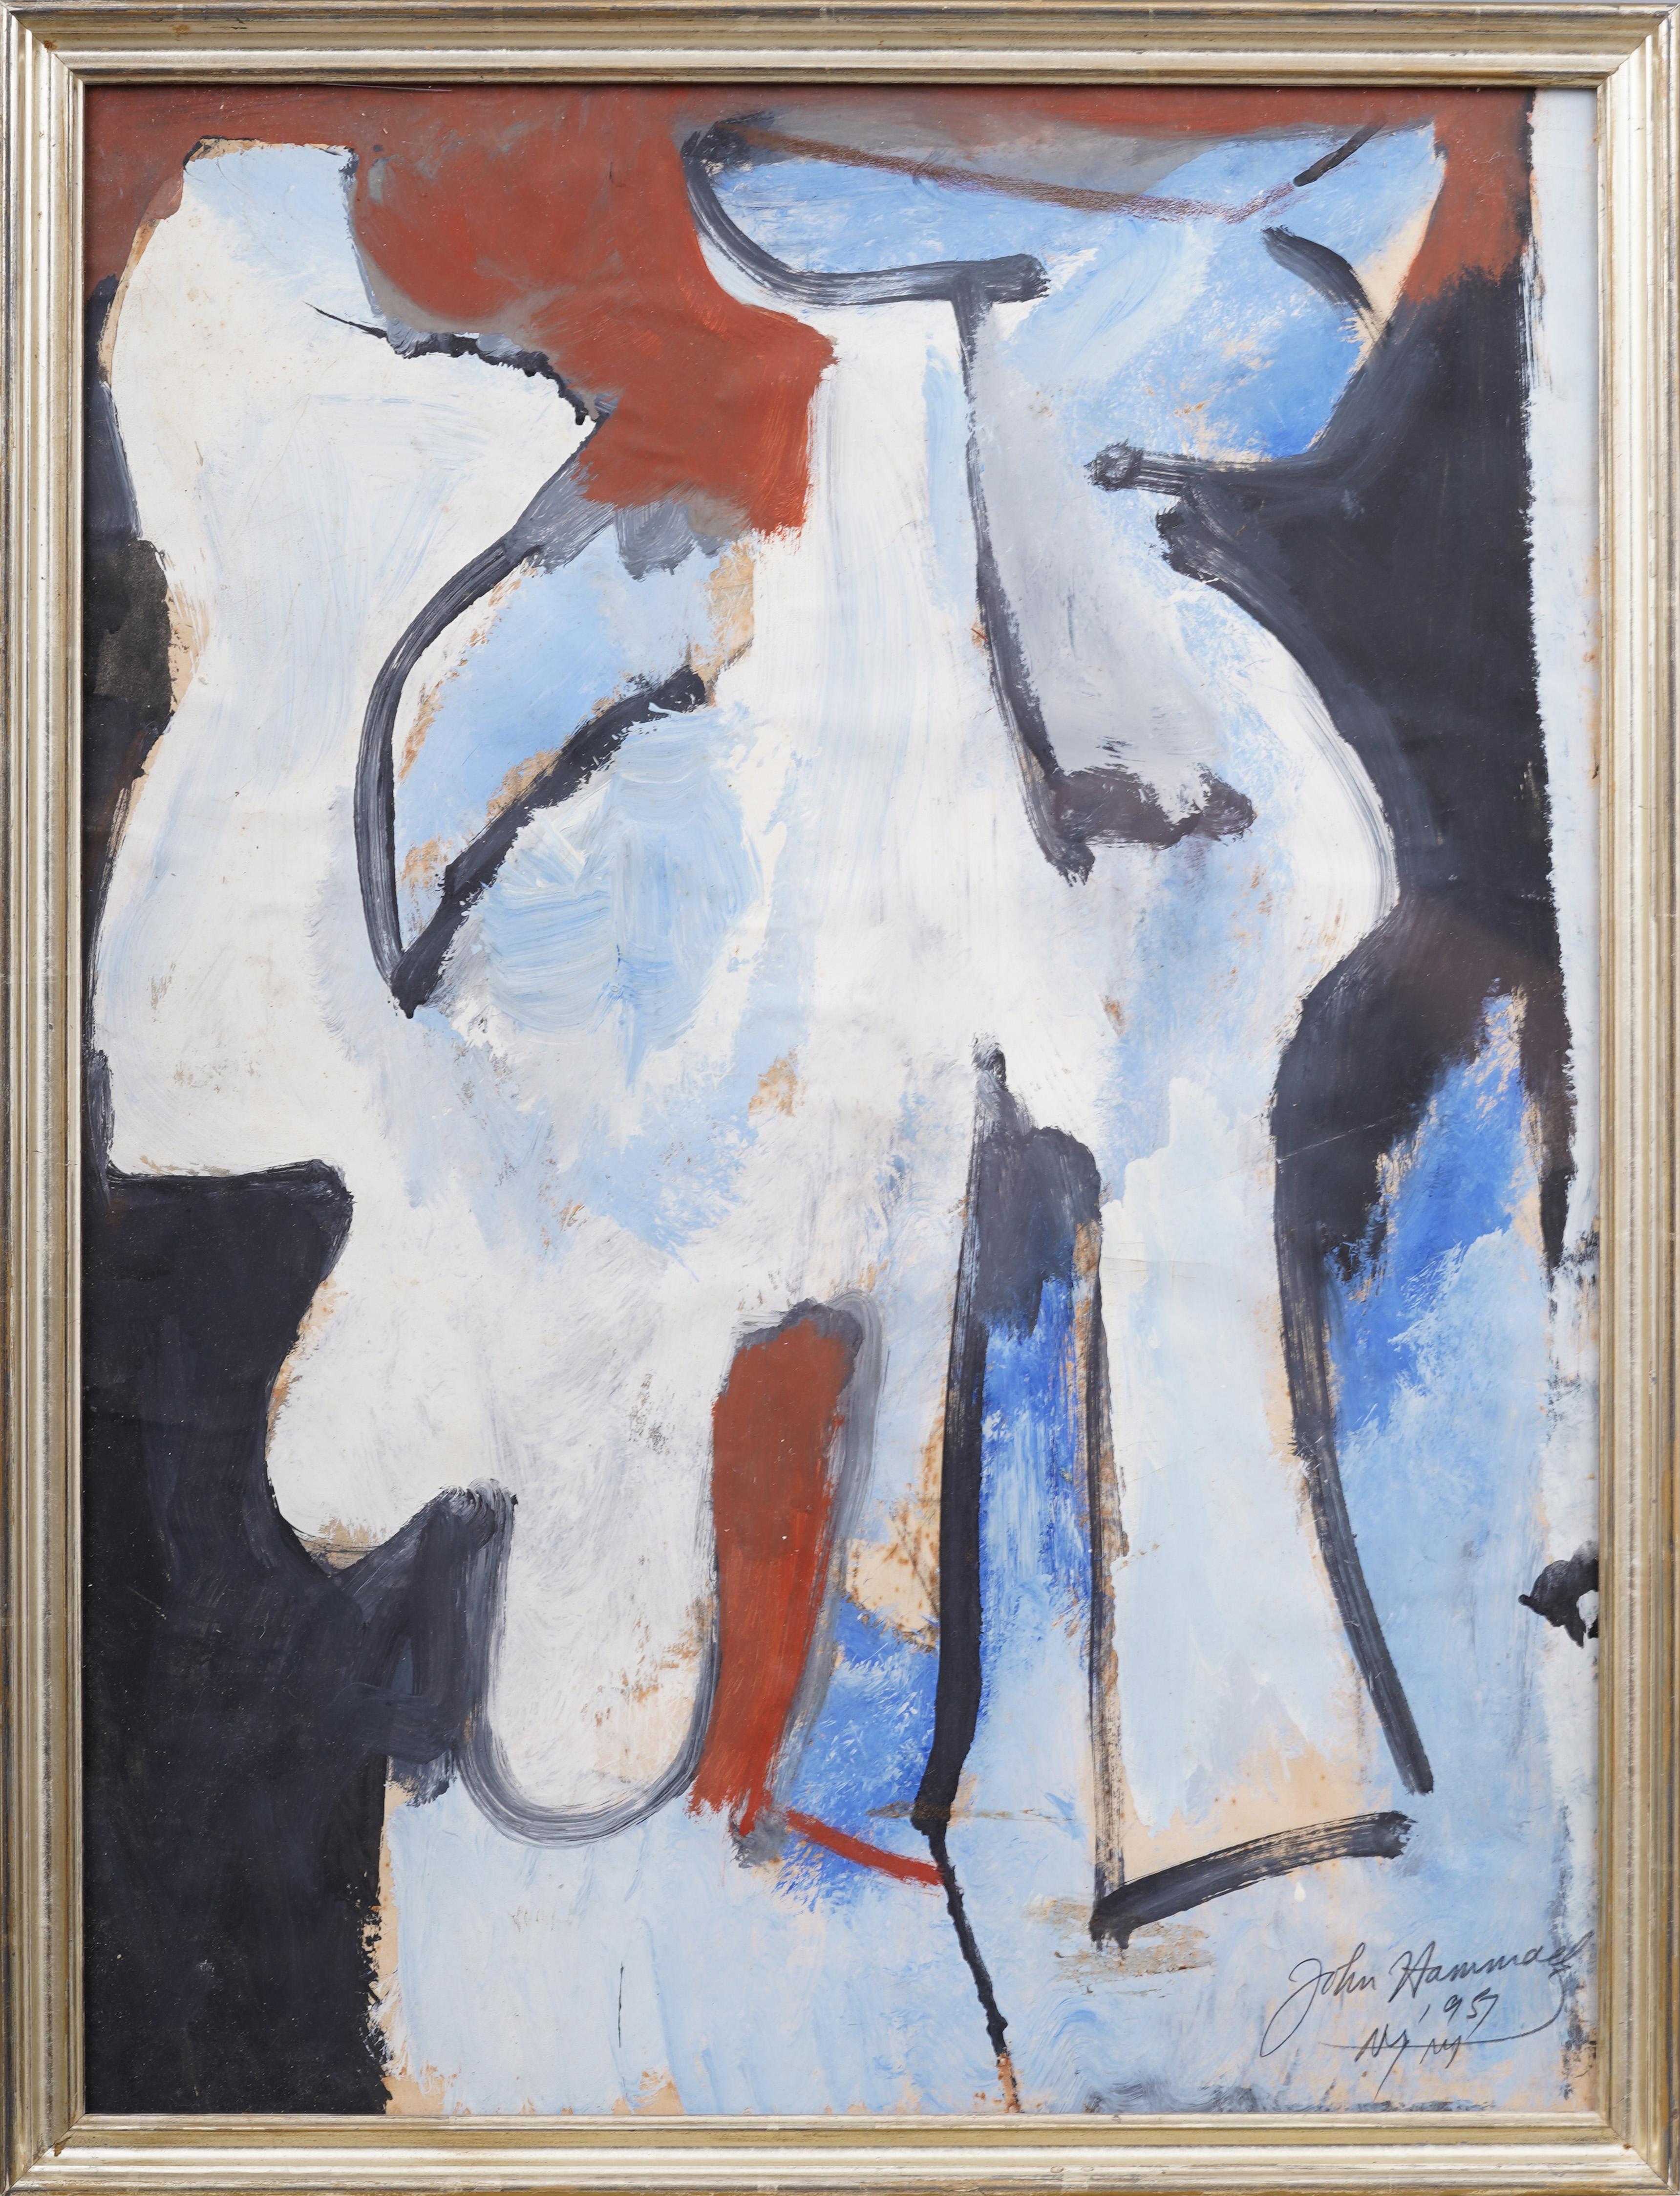 Ancienne peinture à l'huile expressionniste abstraite américaine signée Modernist - Painting de John Hammack